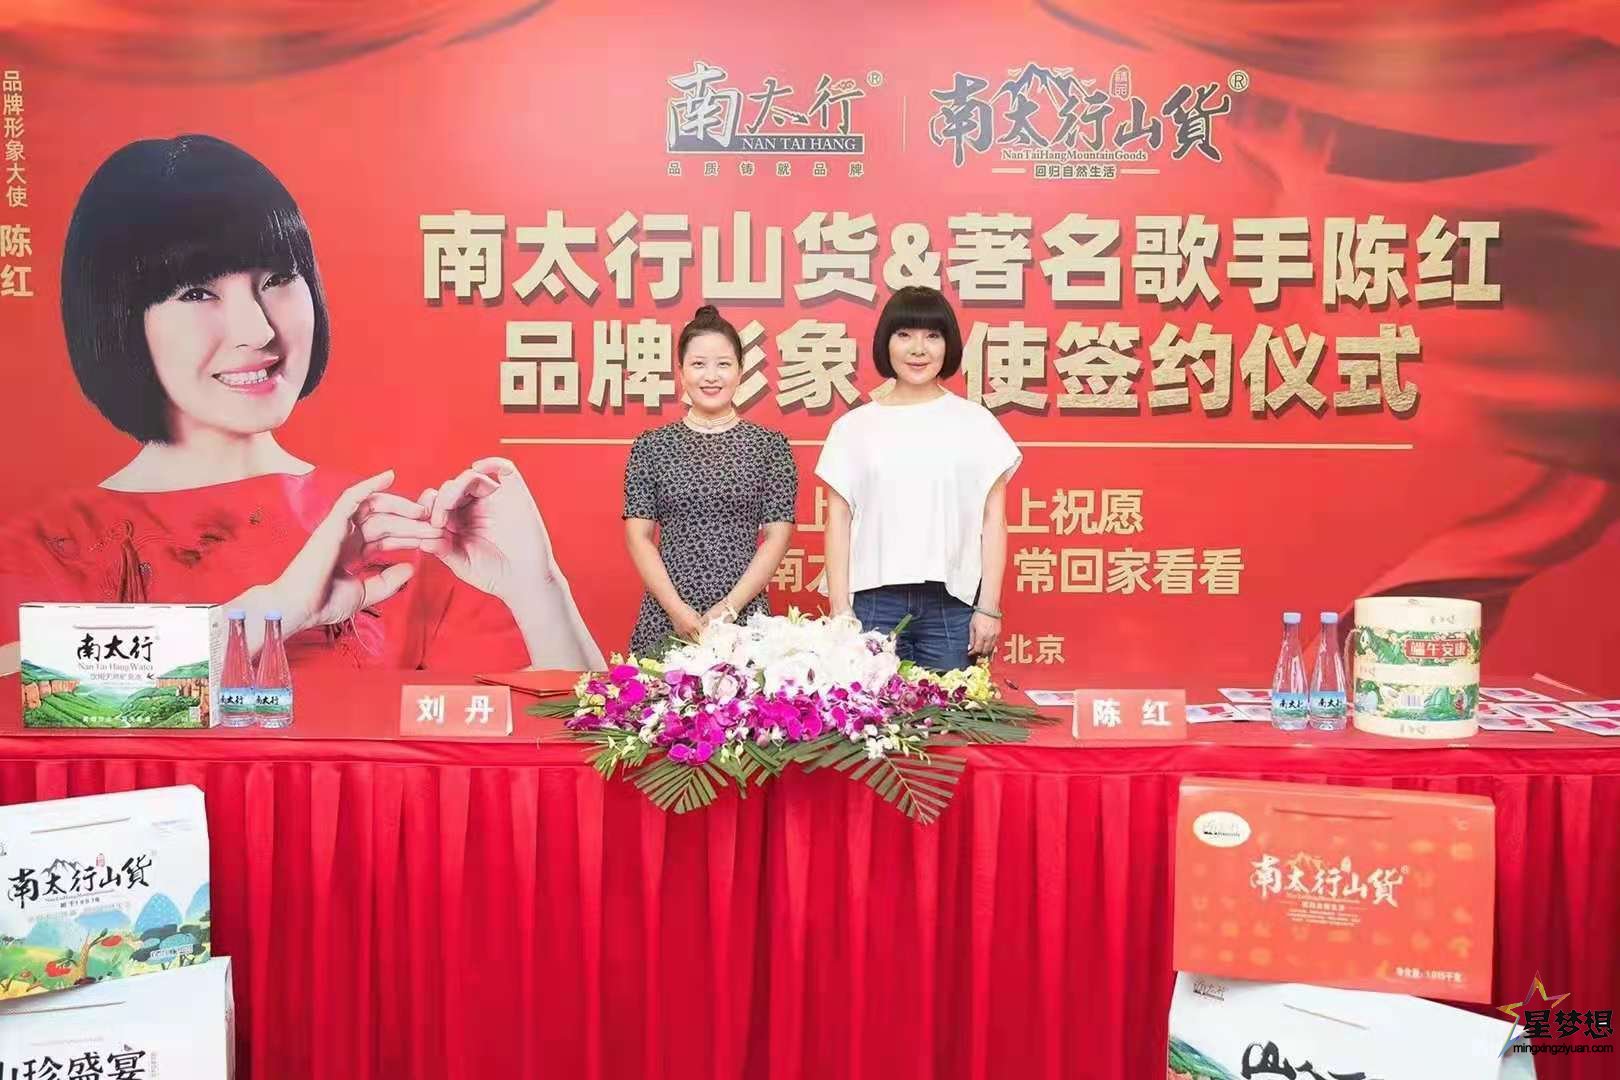 著名歌手陈红签约南太行山货品牌形象代言人